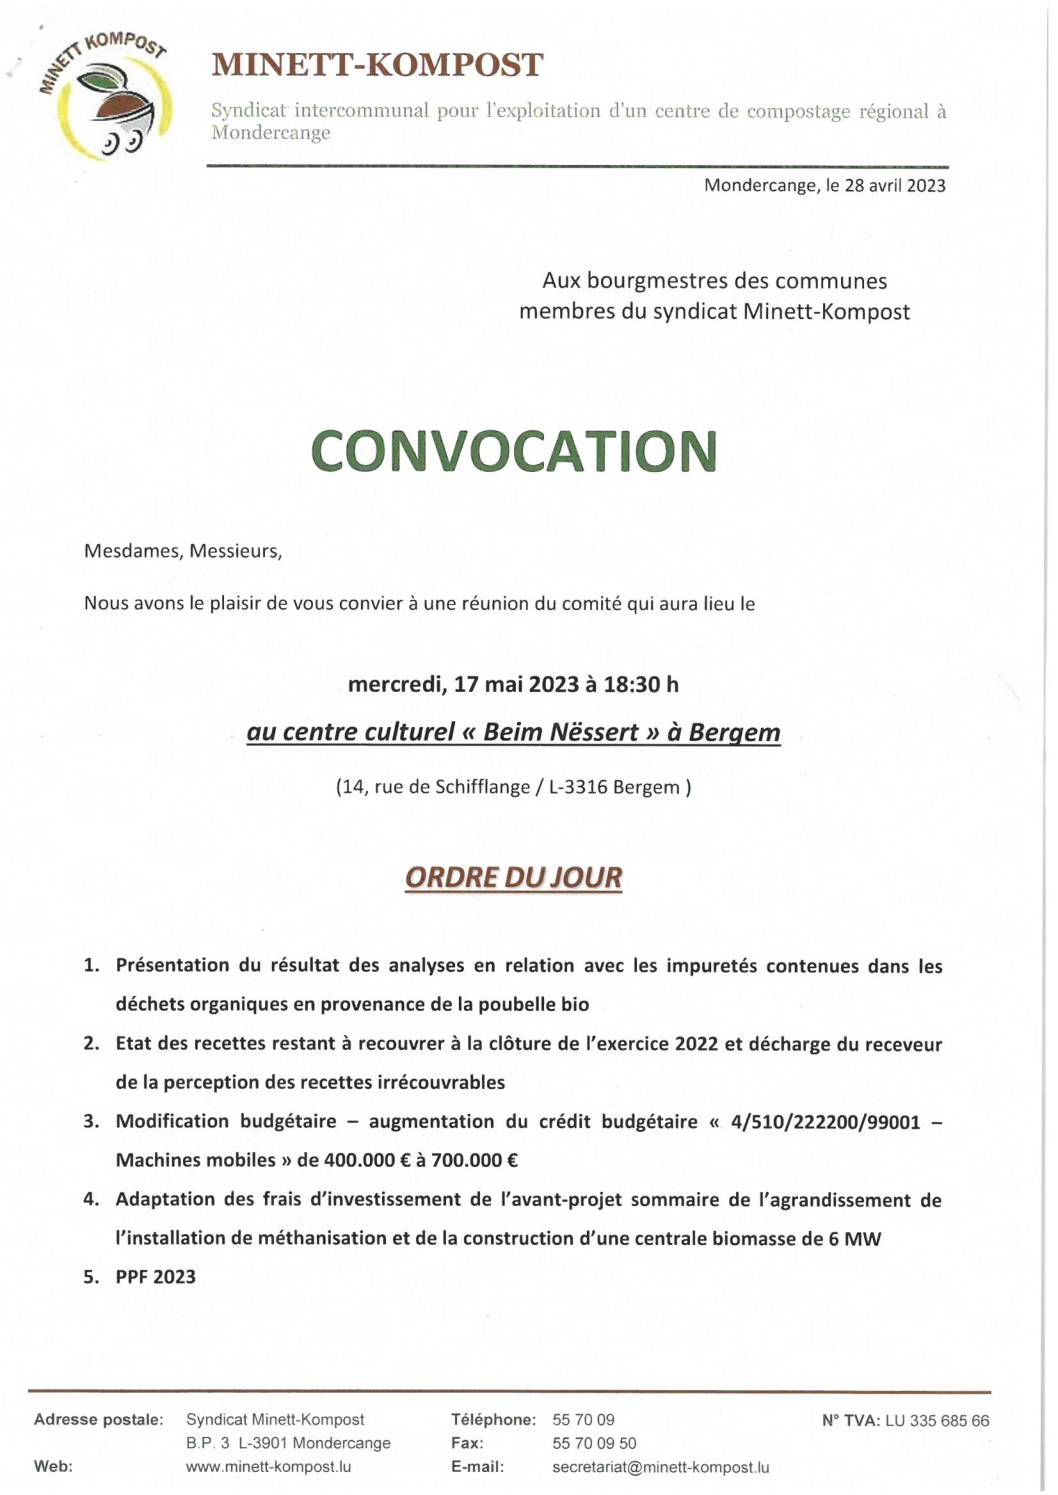 Convocation - Réunion du comité du Minett-Kompost - 17.05.2023